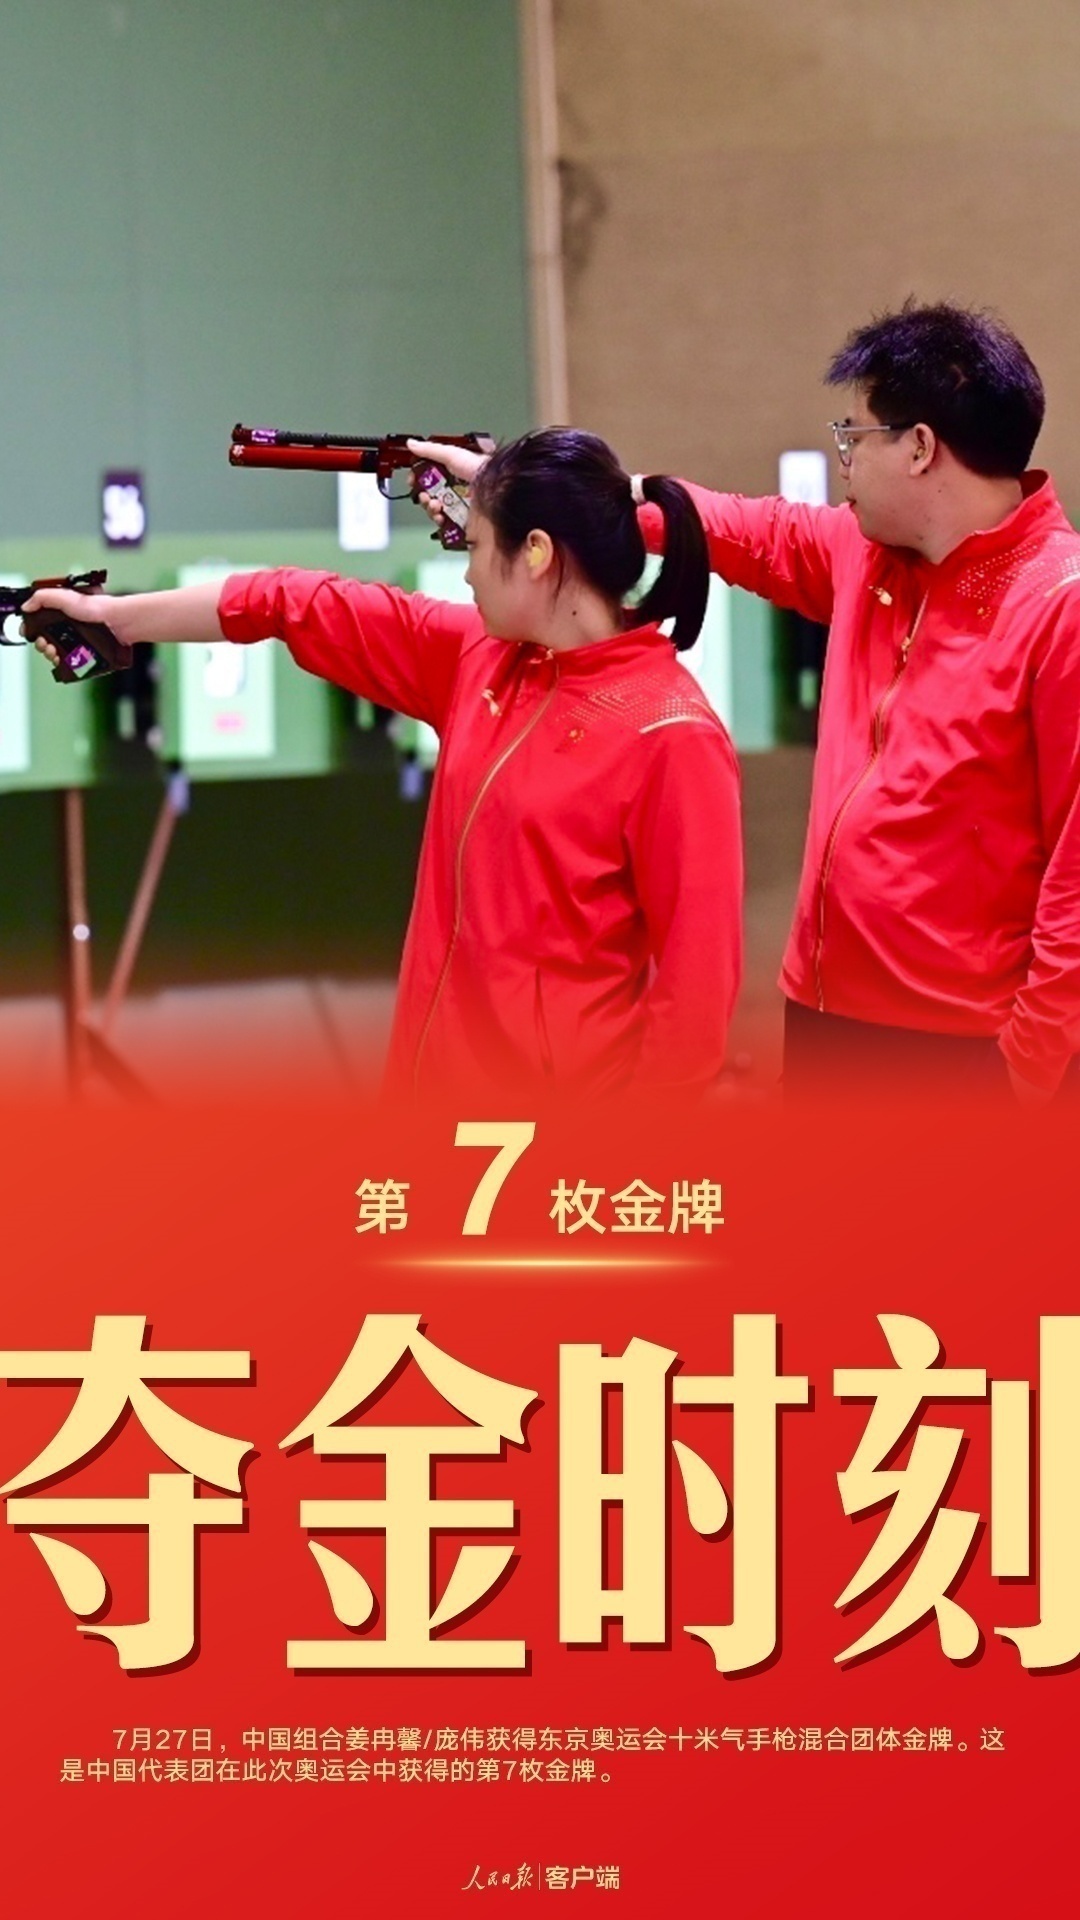 “第7金！姜冉馨/庞伟获得十米气手枪混合团体金牌